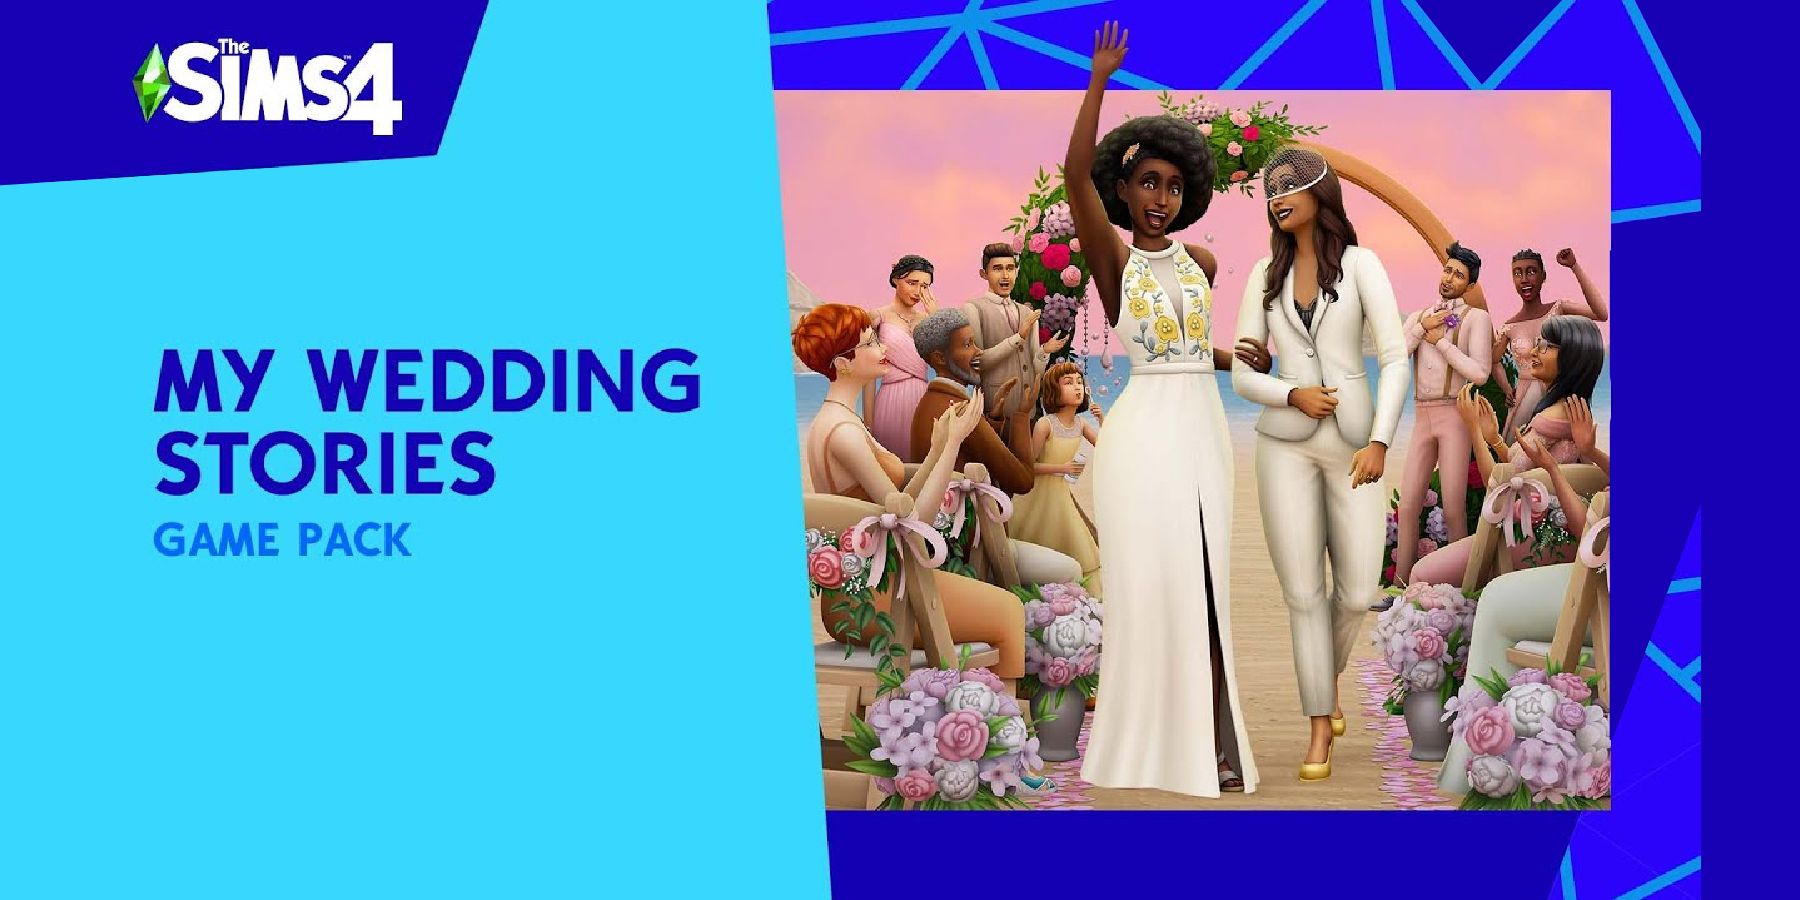 Die Sims 4: Meine Hochzeit das neue Game Pack Titel